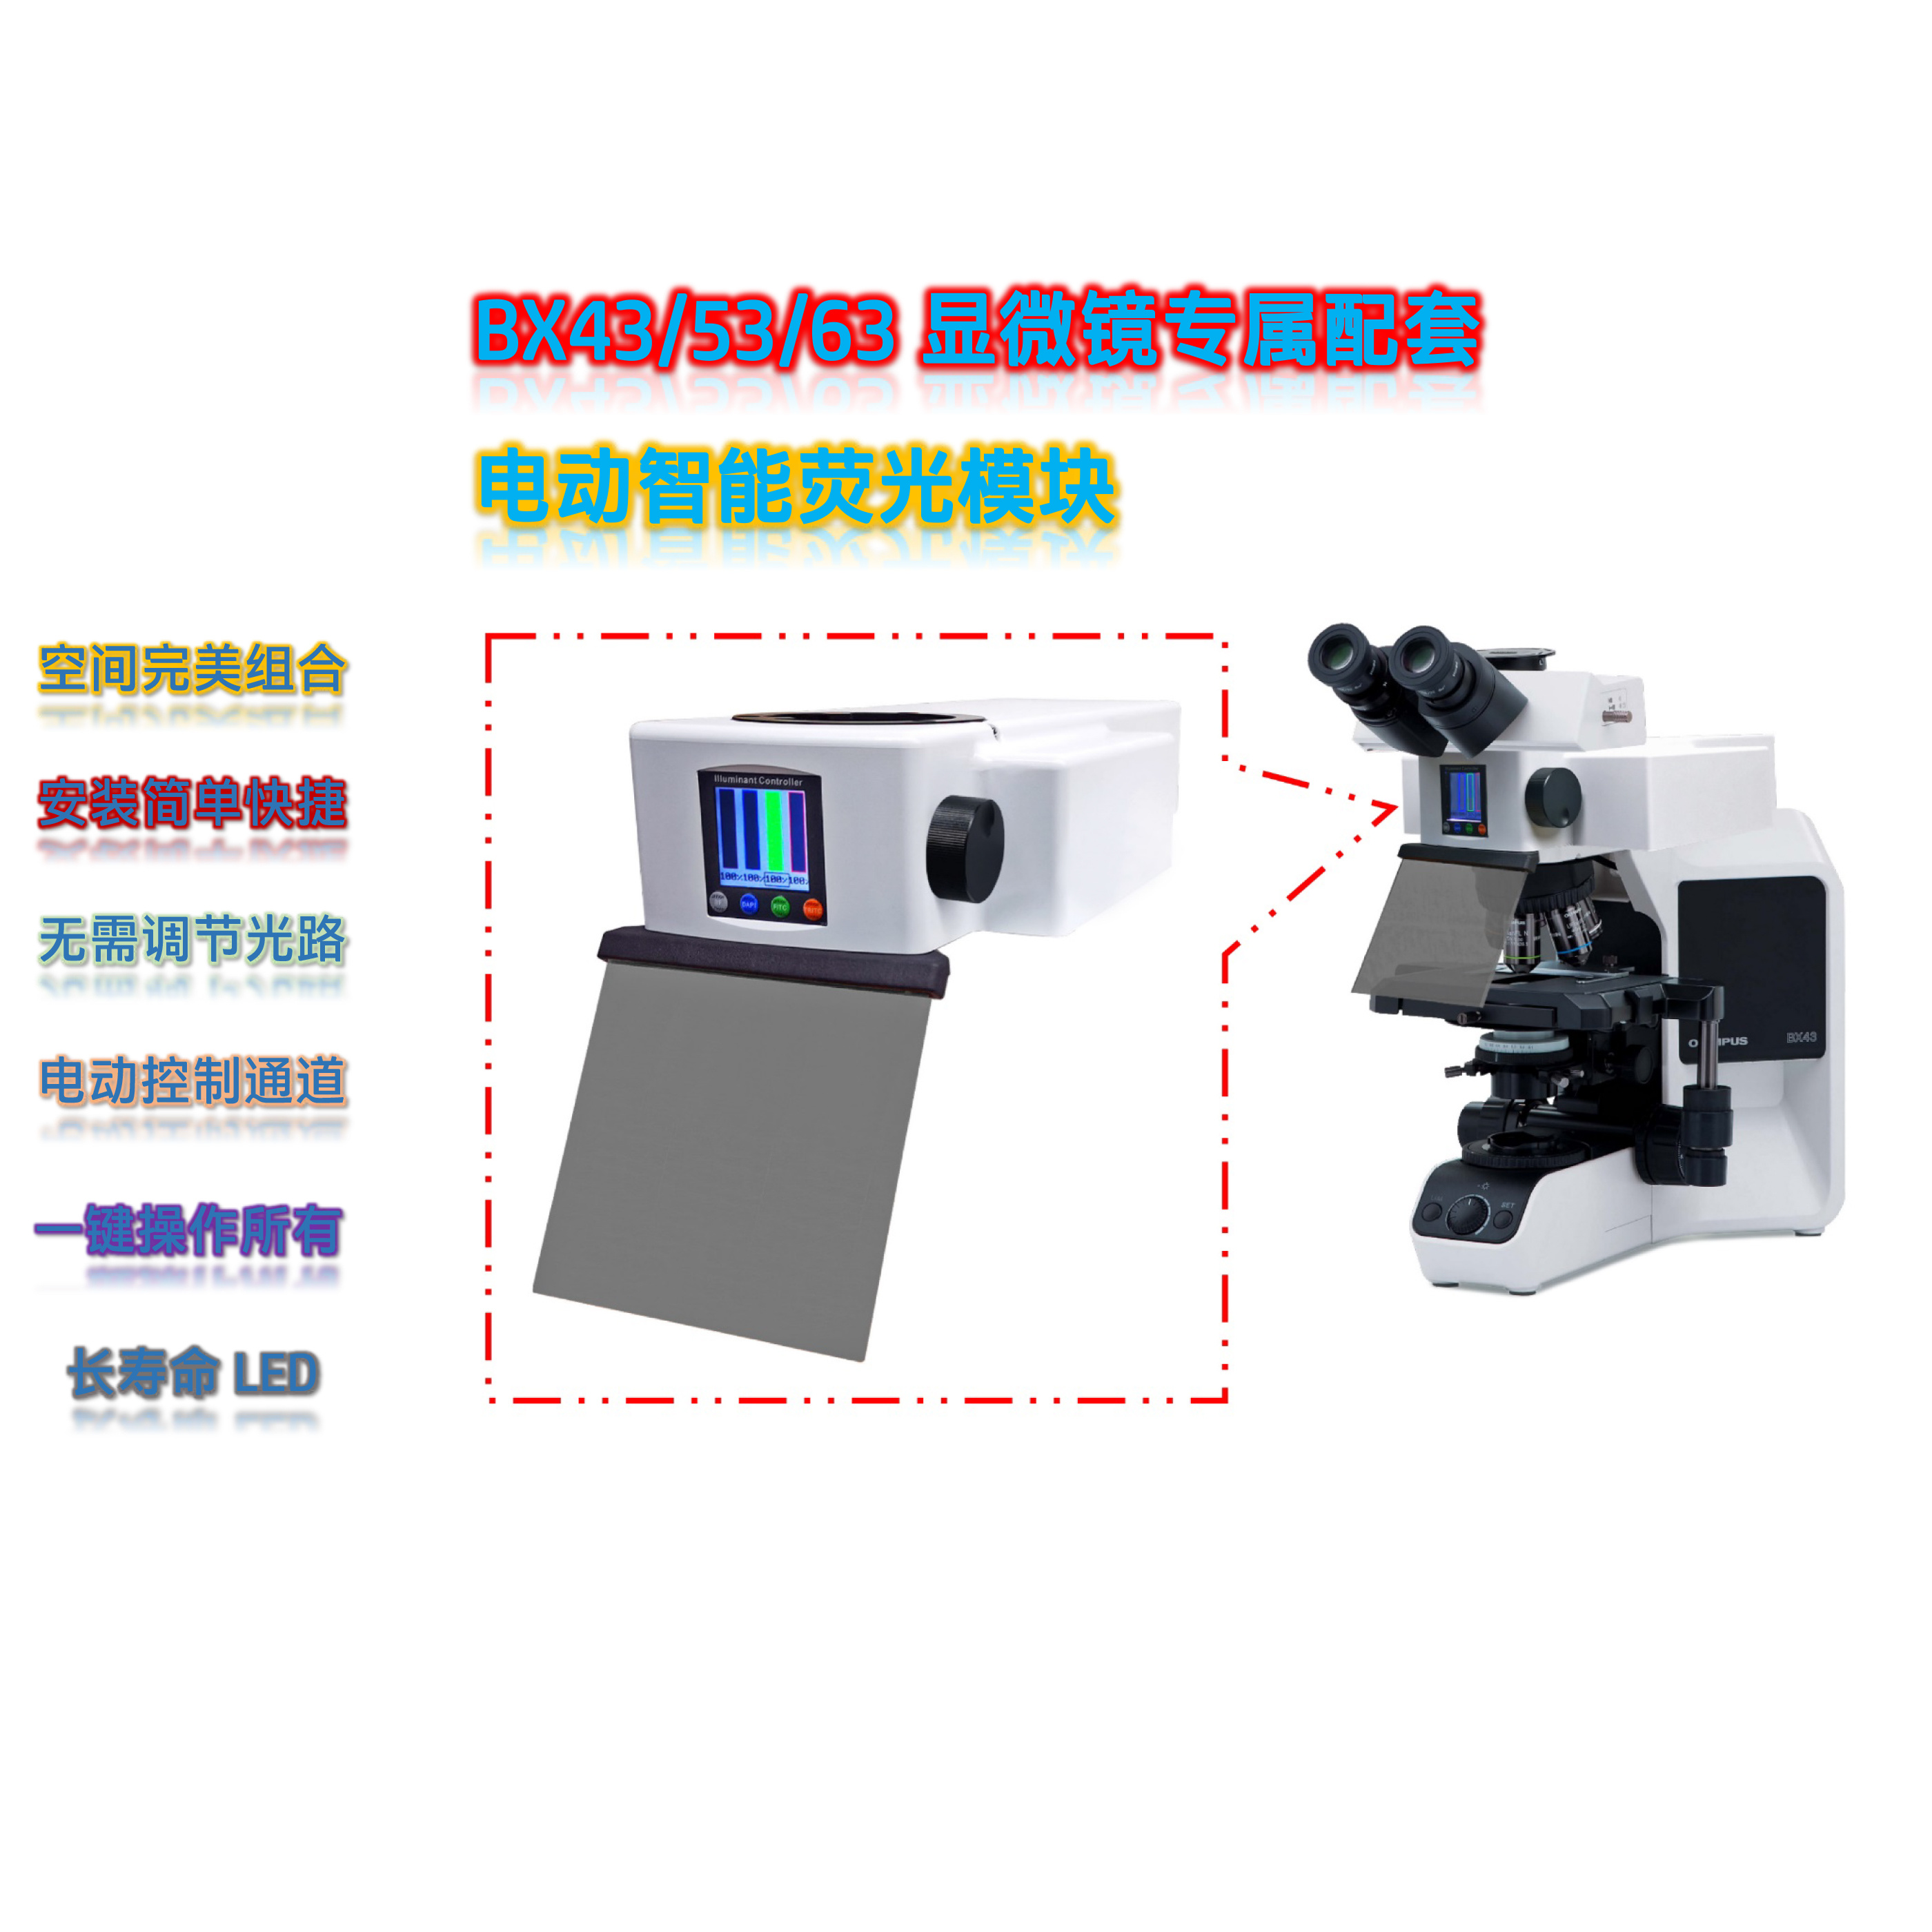  奥林巴斯正置荧光模块显微镜BX43配套荧光附件BX-UVG-E